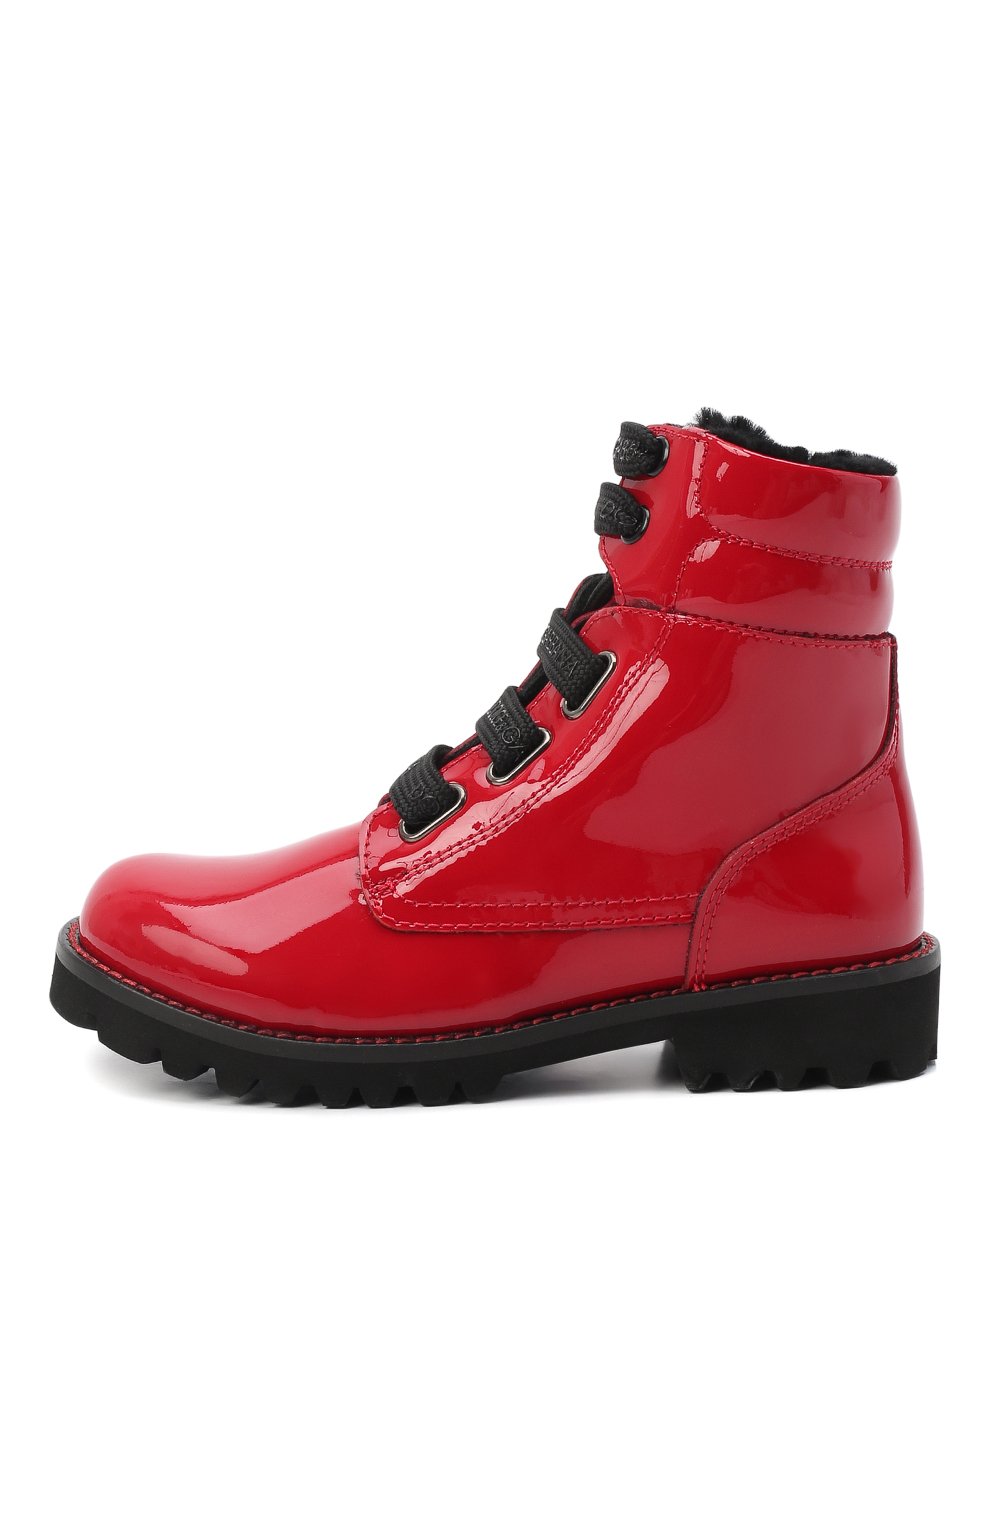 Кожаные ботинки с меховой отделкой Dolce & Gabbana D10849/AB543/29-36 Фото 2